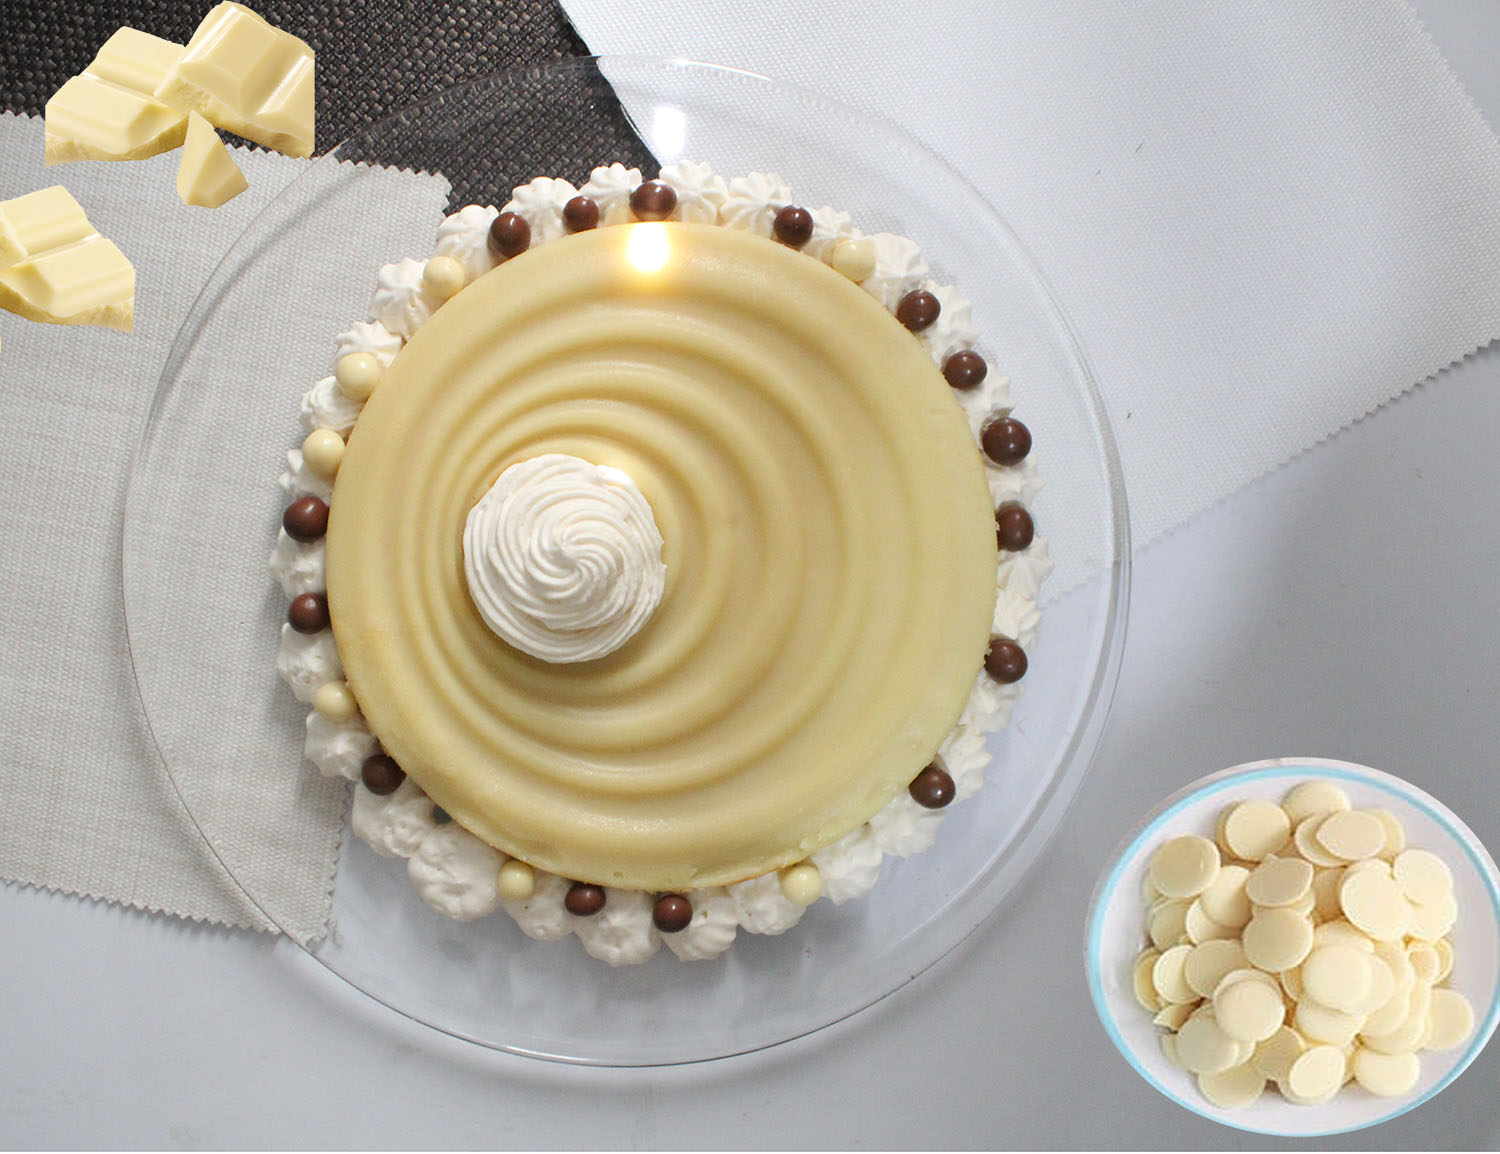 IMG 6632 - עוגת קסם חלבית מדהימה